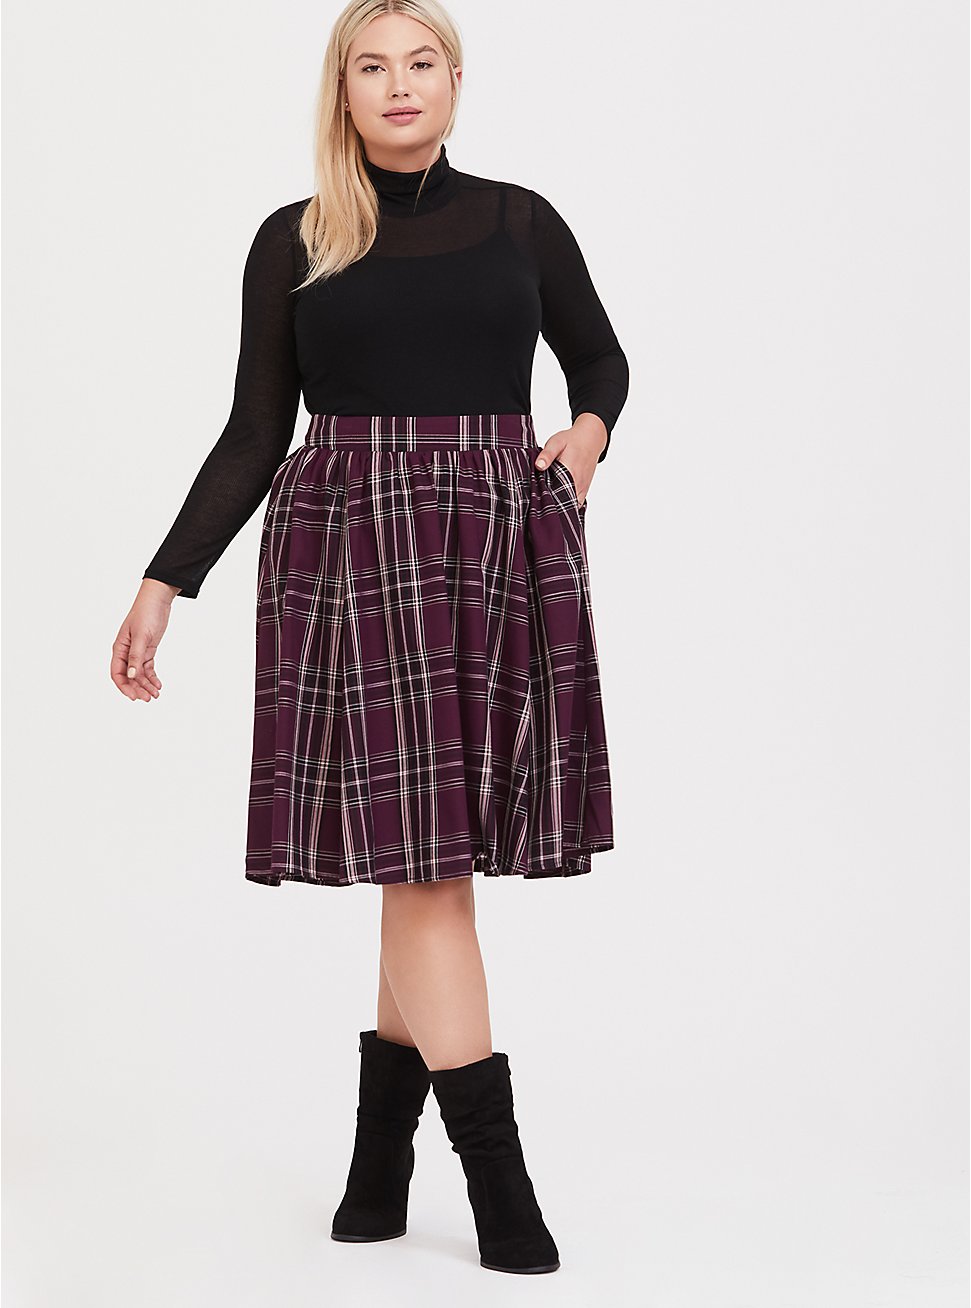 Plus Size - Burgundy Purple Plaid Twill Midi Skirt - Torrid